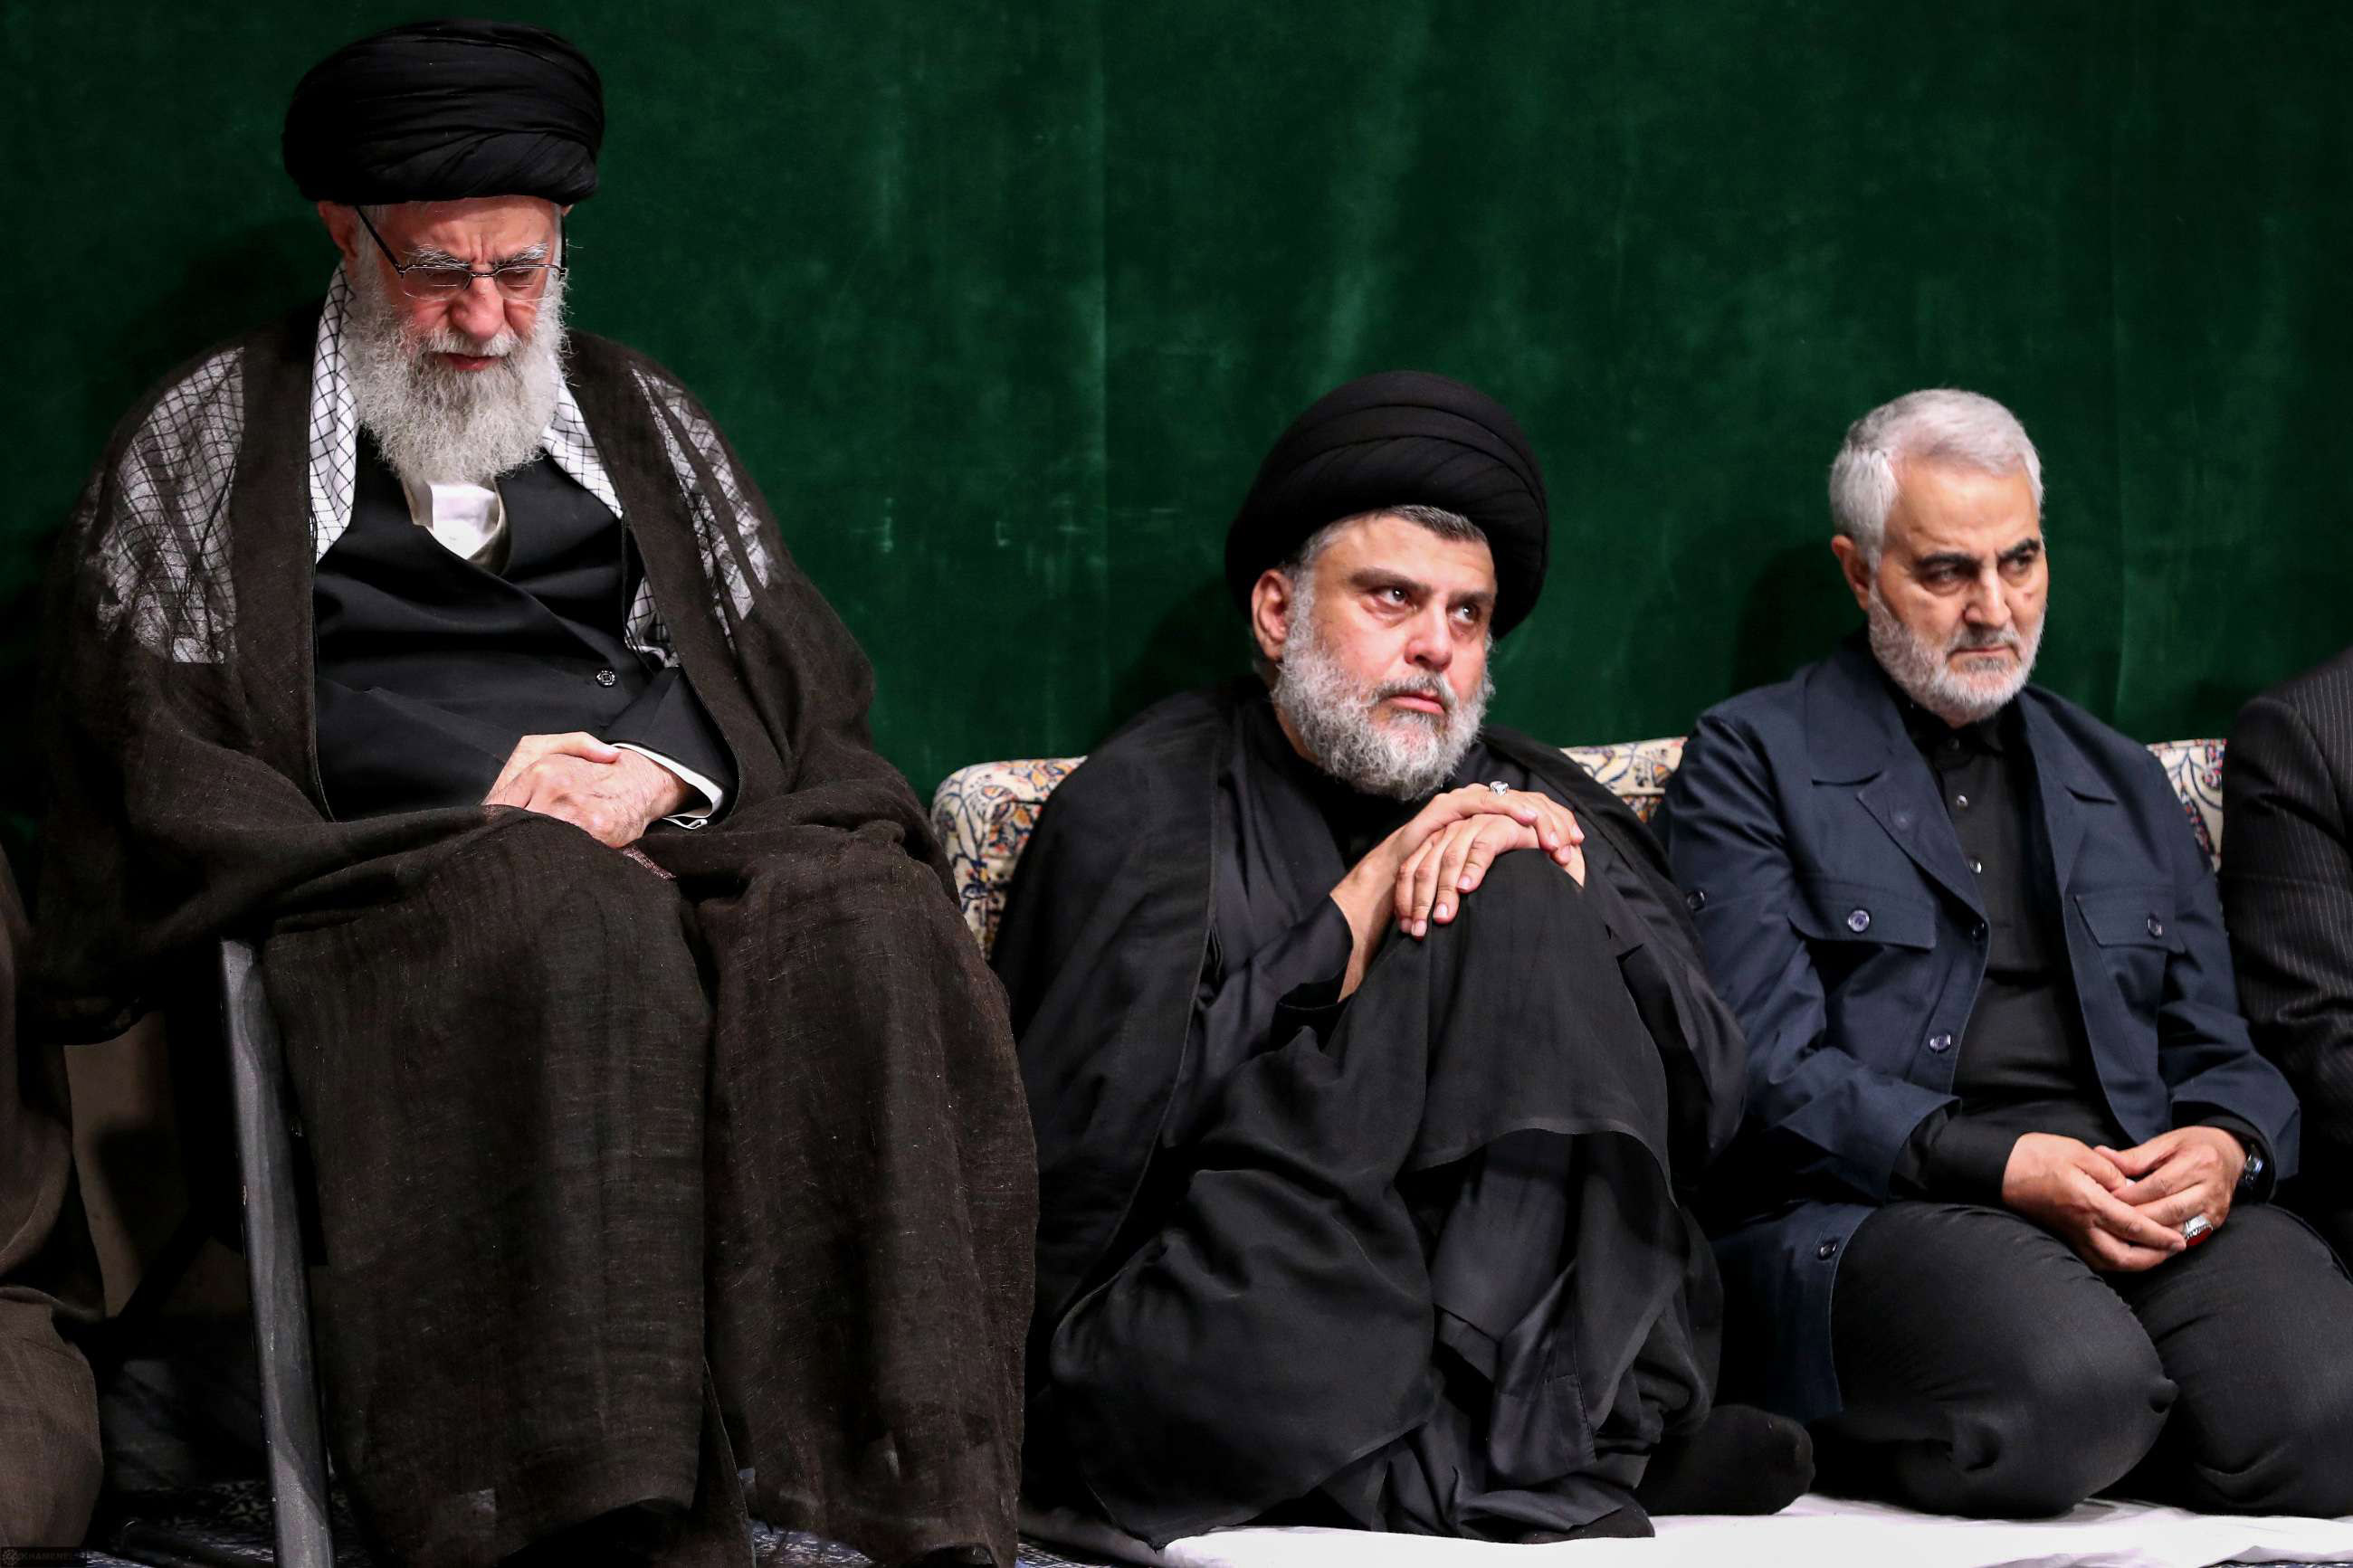 طهران تفقد نفوذها حتى في المدن العراقية ذات الاغلبية الشيعية التي كانت تعتقد انها تحت سيطرتها